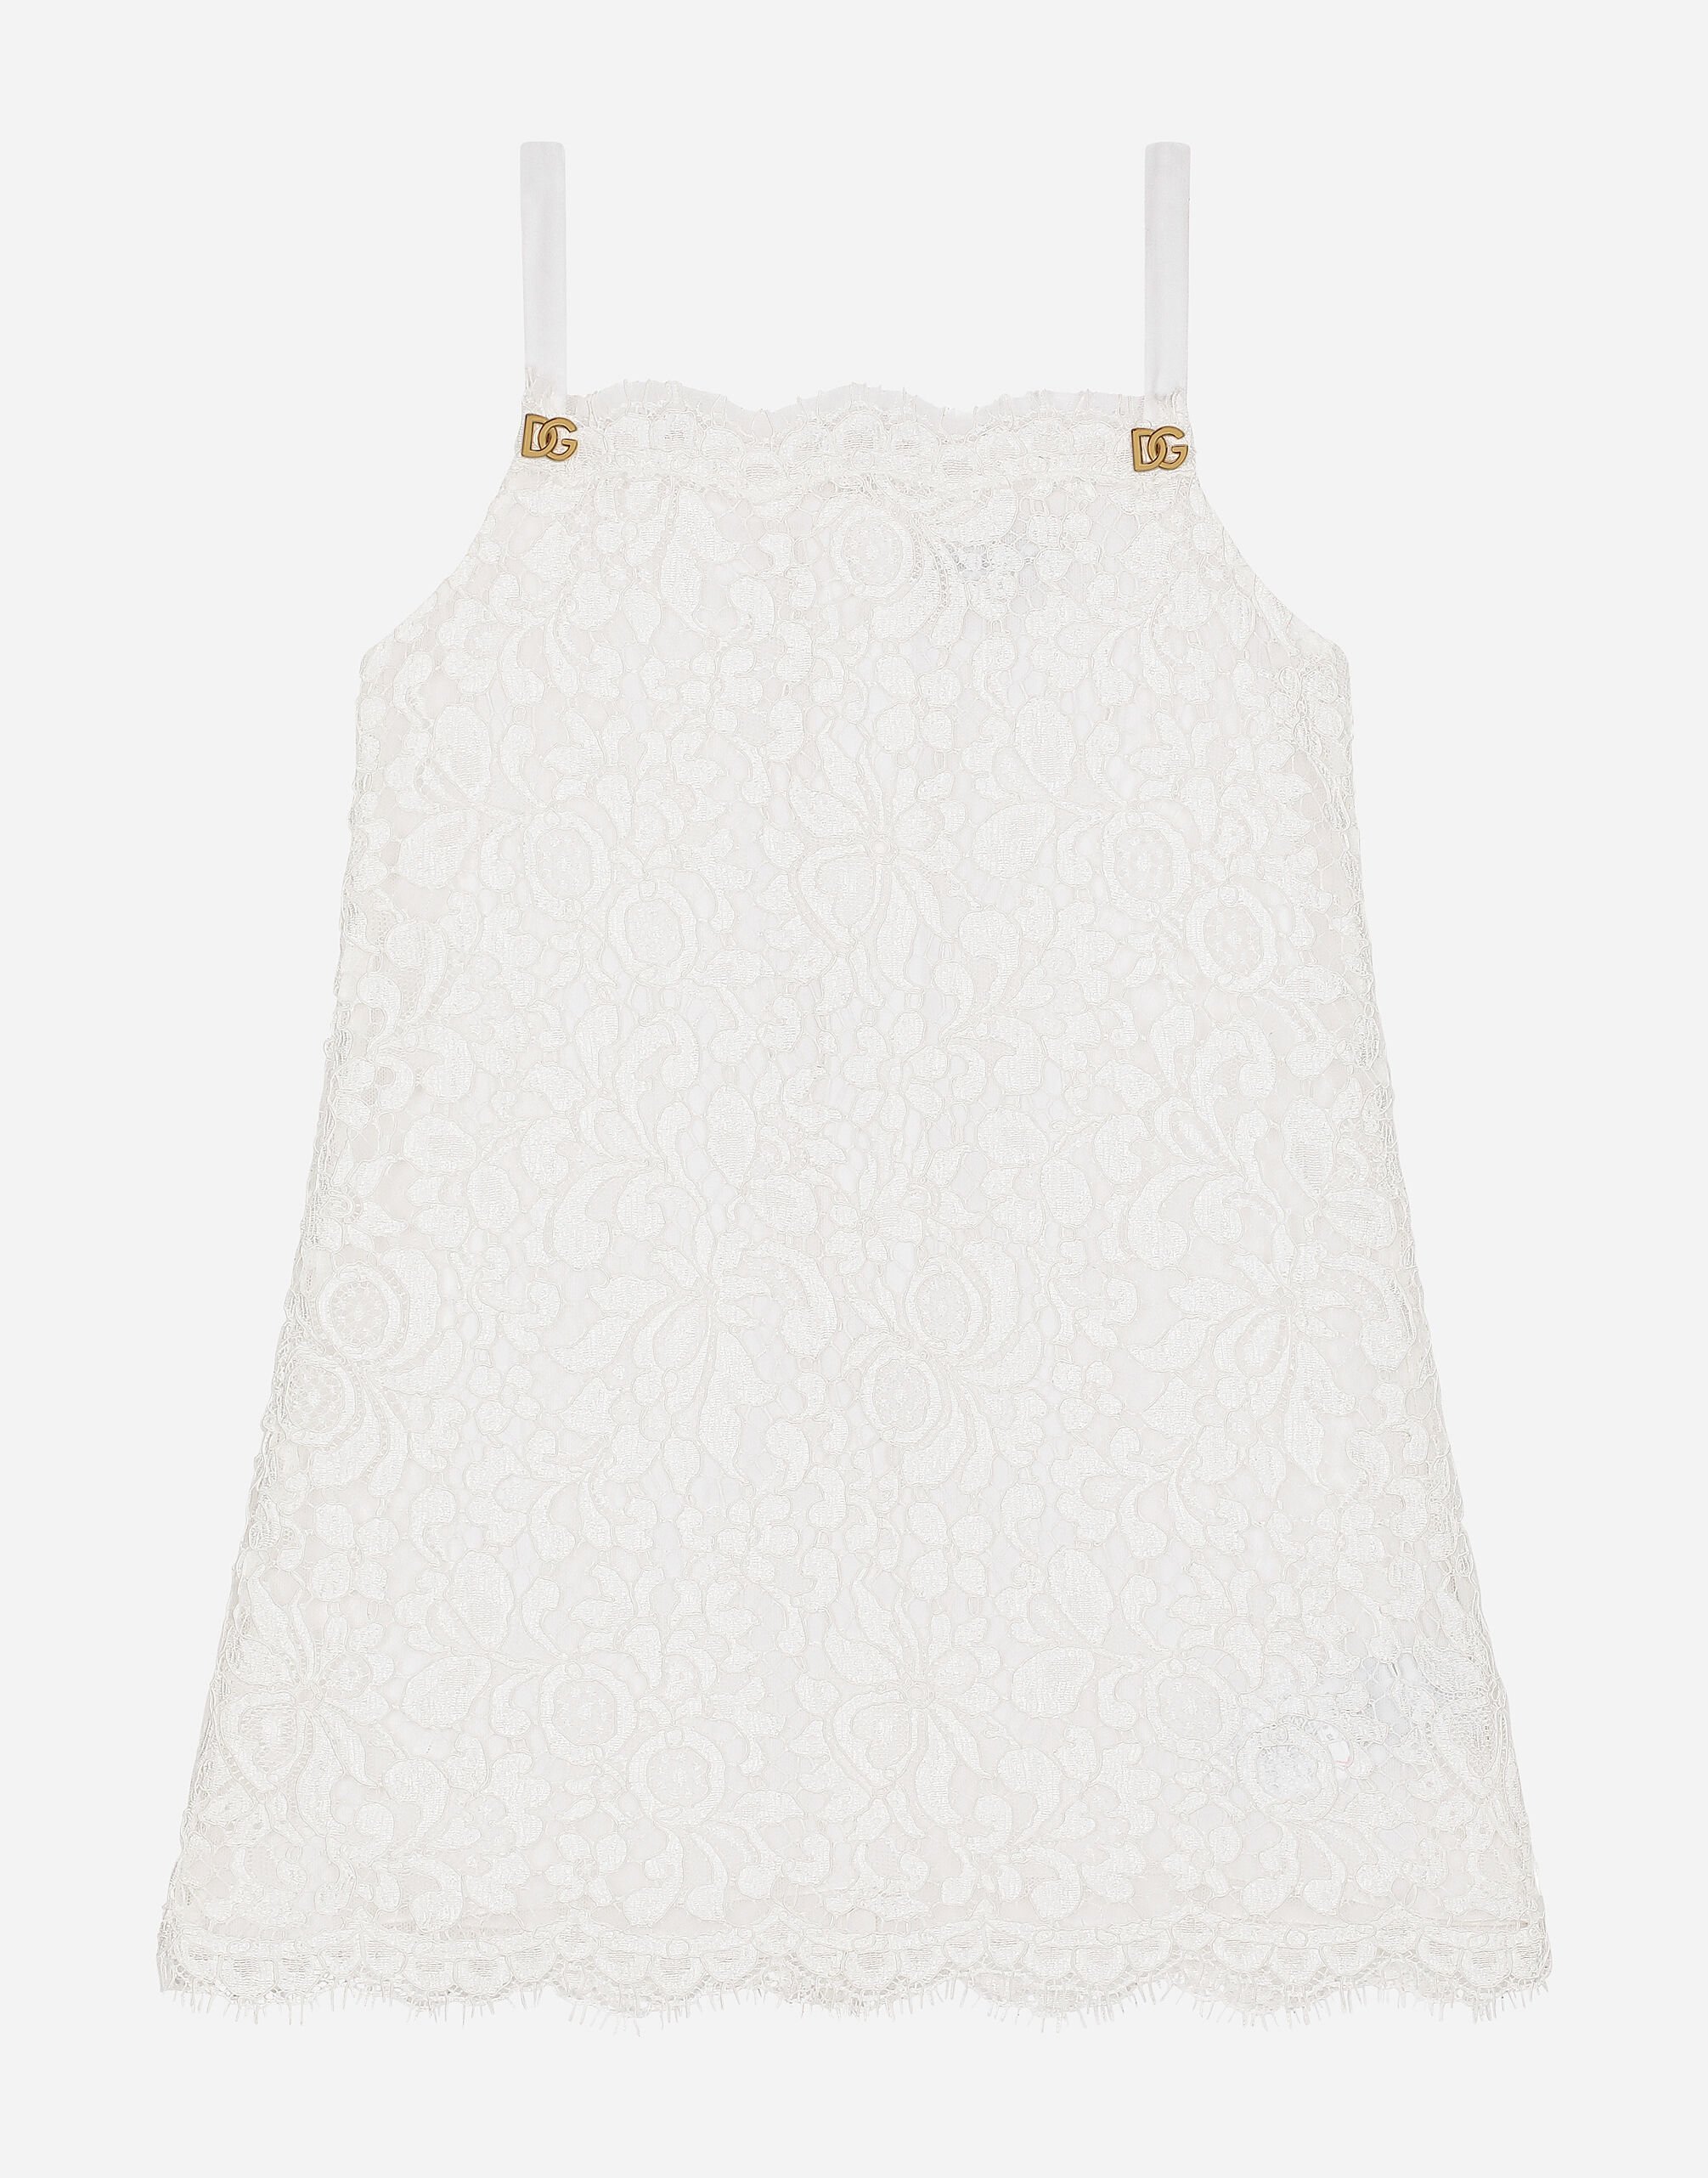 Dolce & Gabbana Cordonetto lace dress White L51N69FG5BL